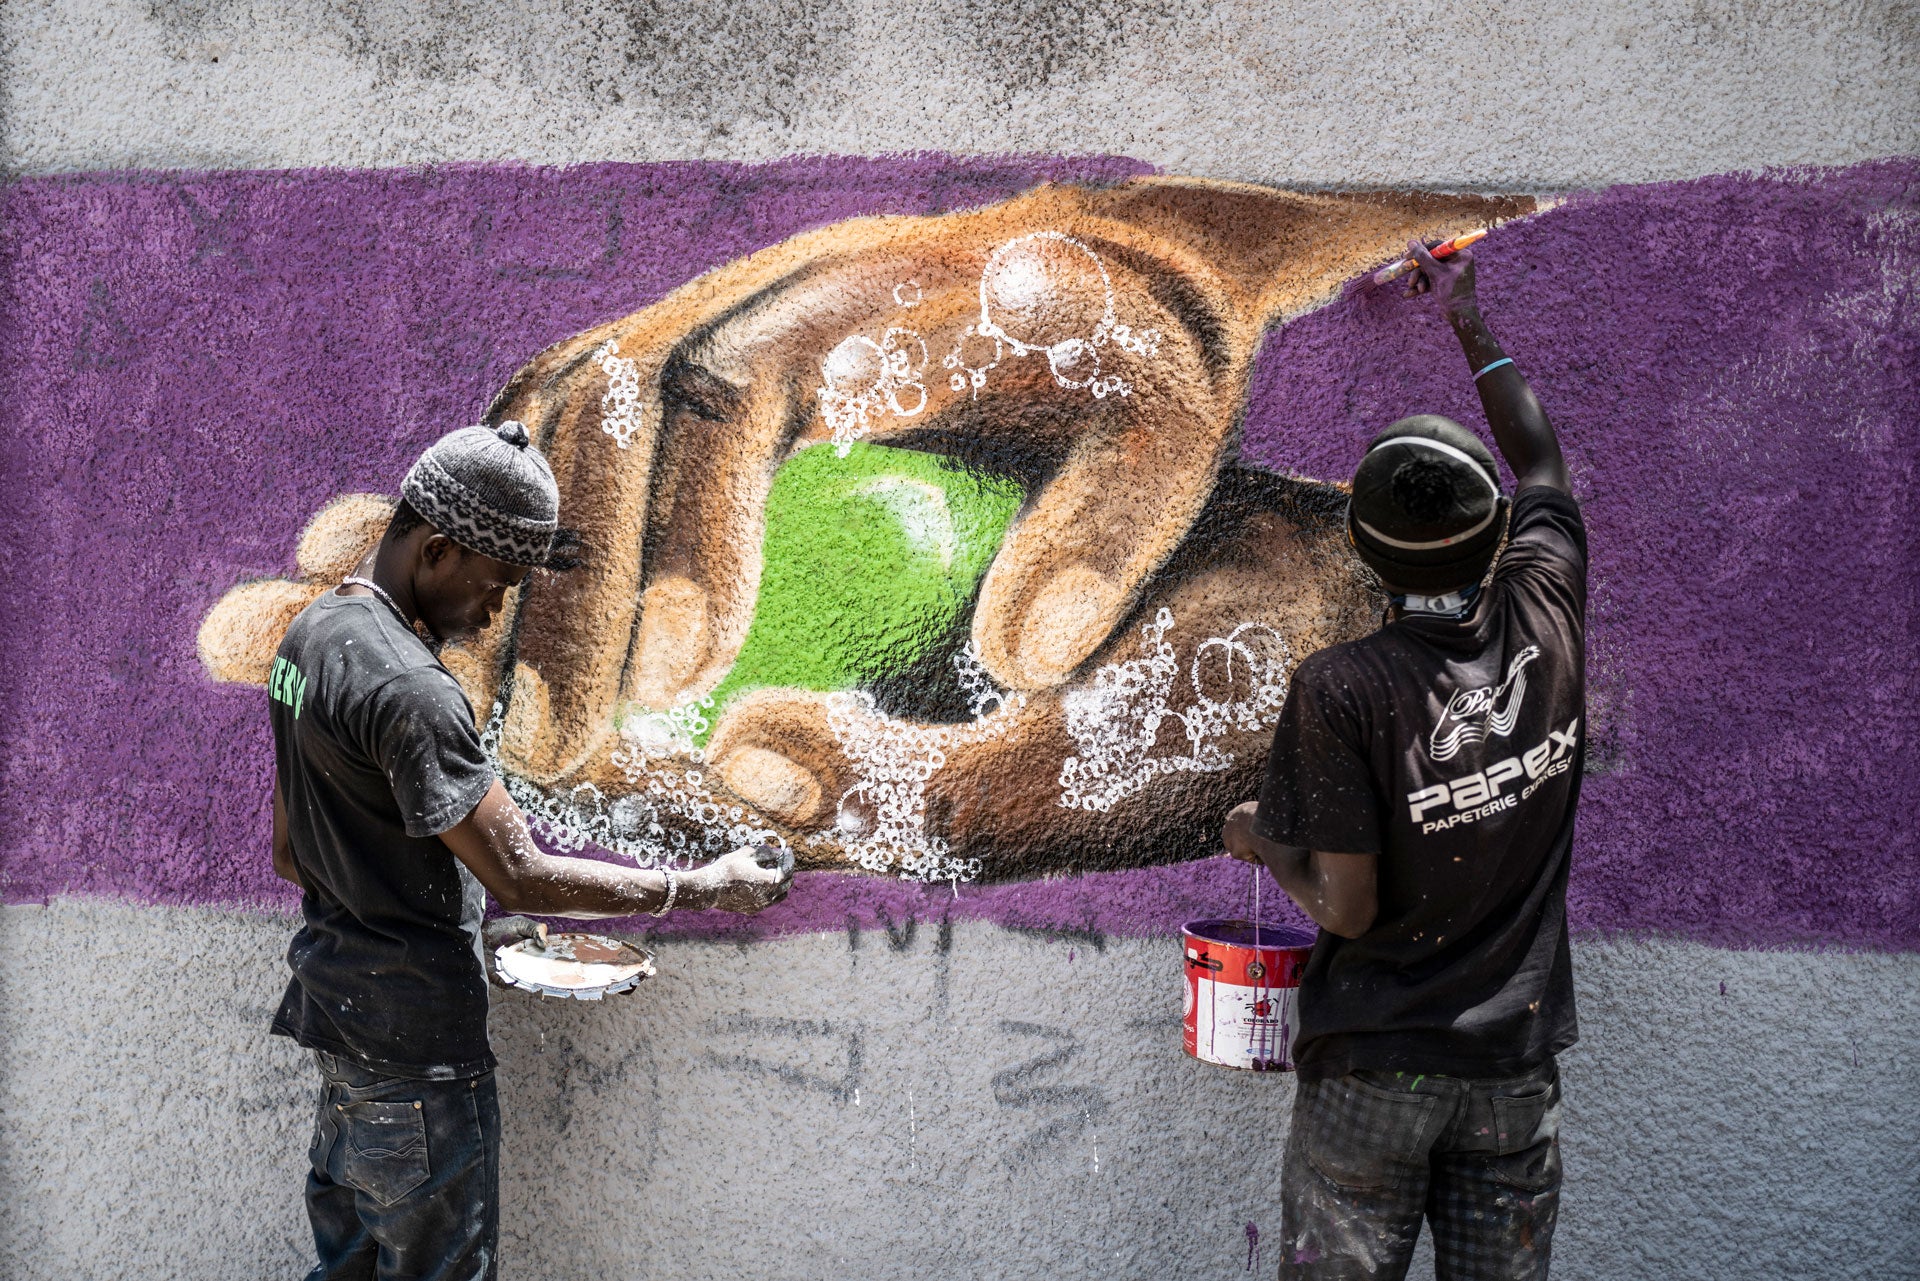 Deux membres du collectif sénégalais RBS CREW, spécialisé dans l’art du graffiti, travaillent sur une peinture murale illustrant le lavage de mains, préconisé pour se protéger contre le coronavirus. Cette photo a été prise devant le mur d'un lycée du quar